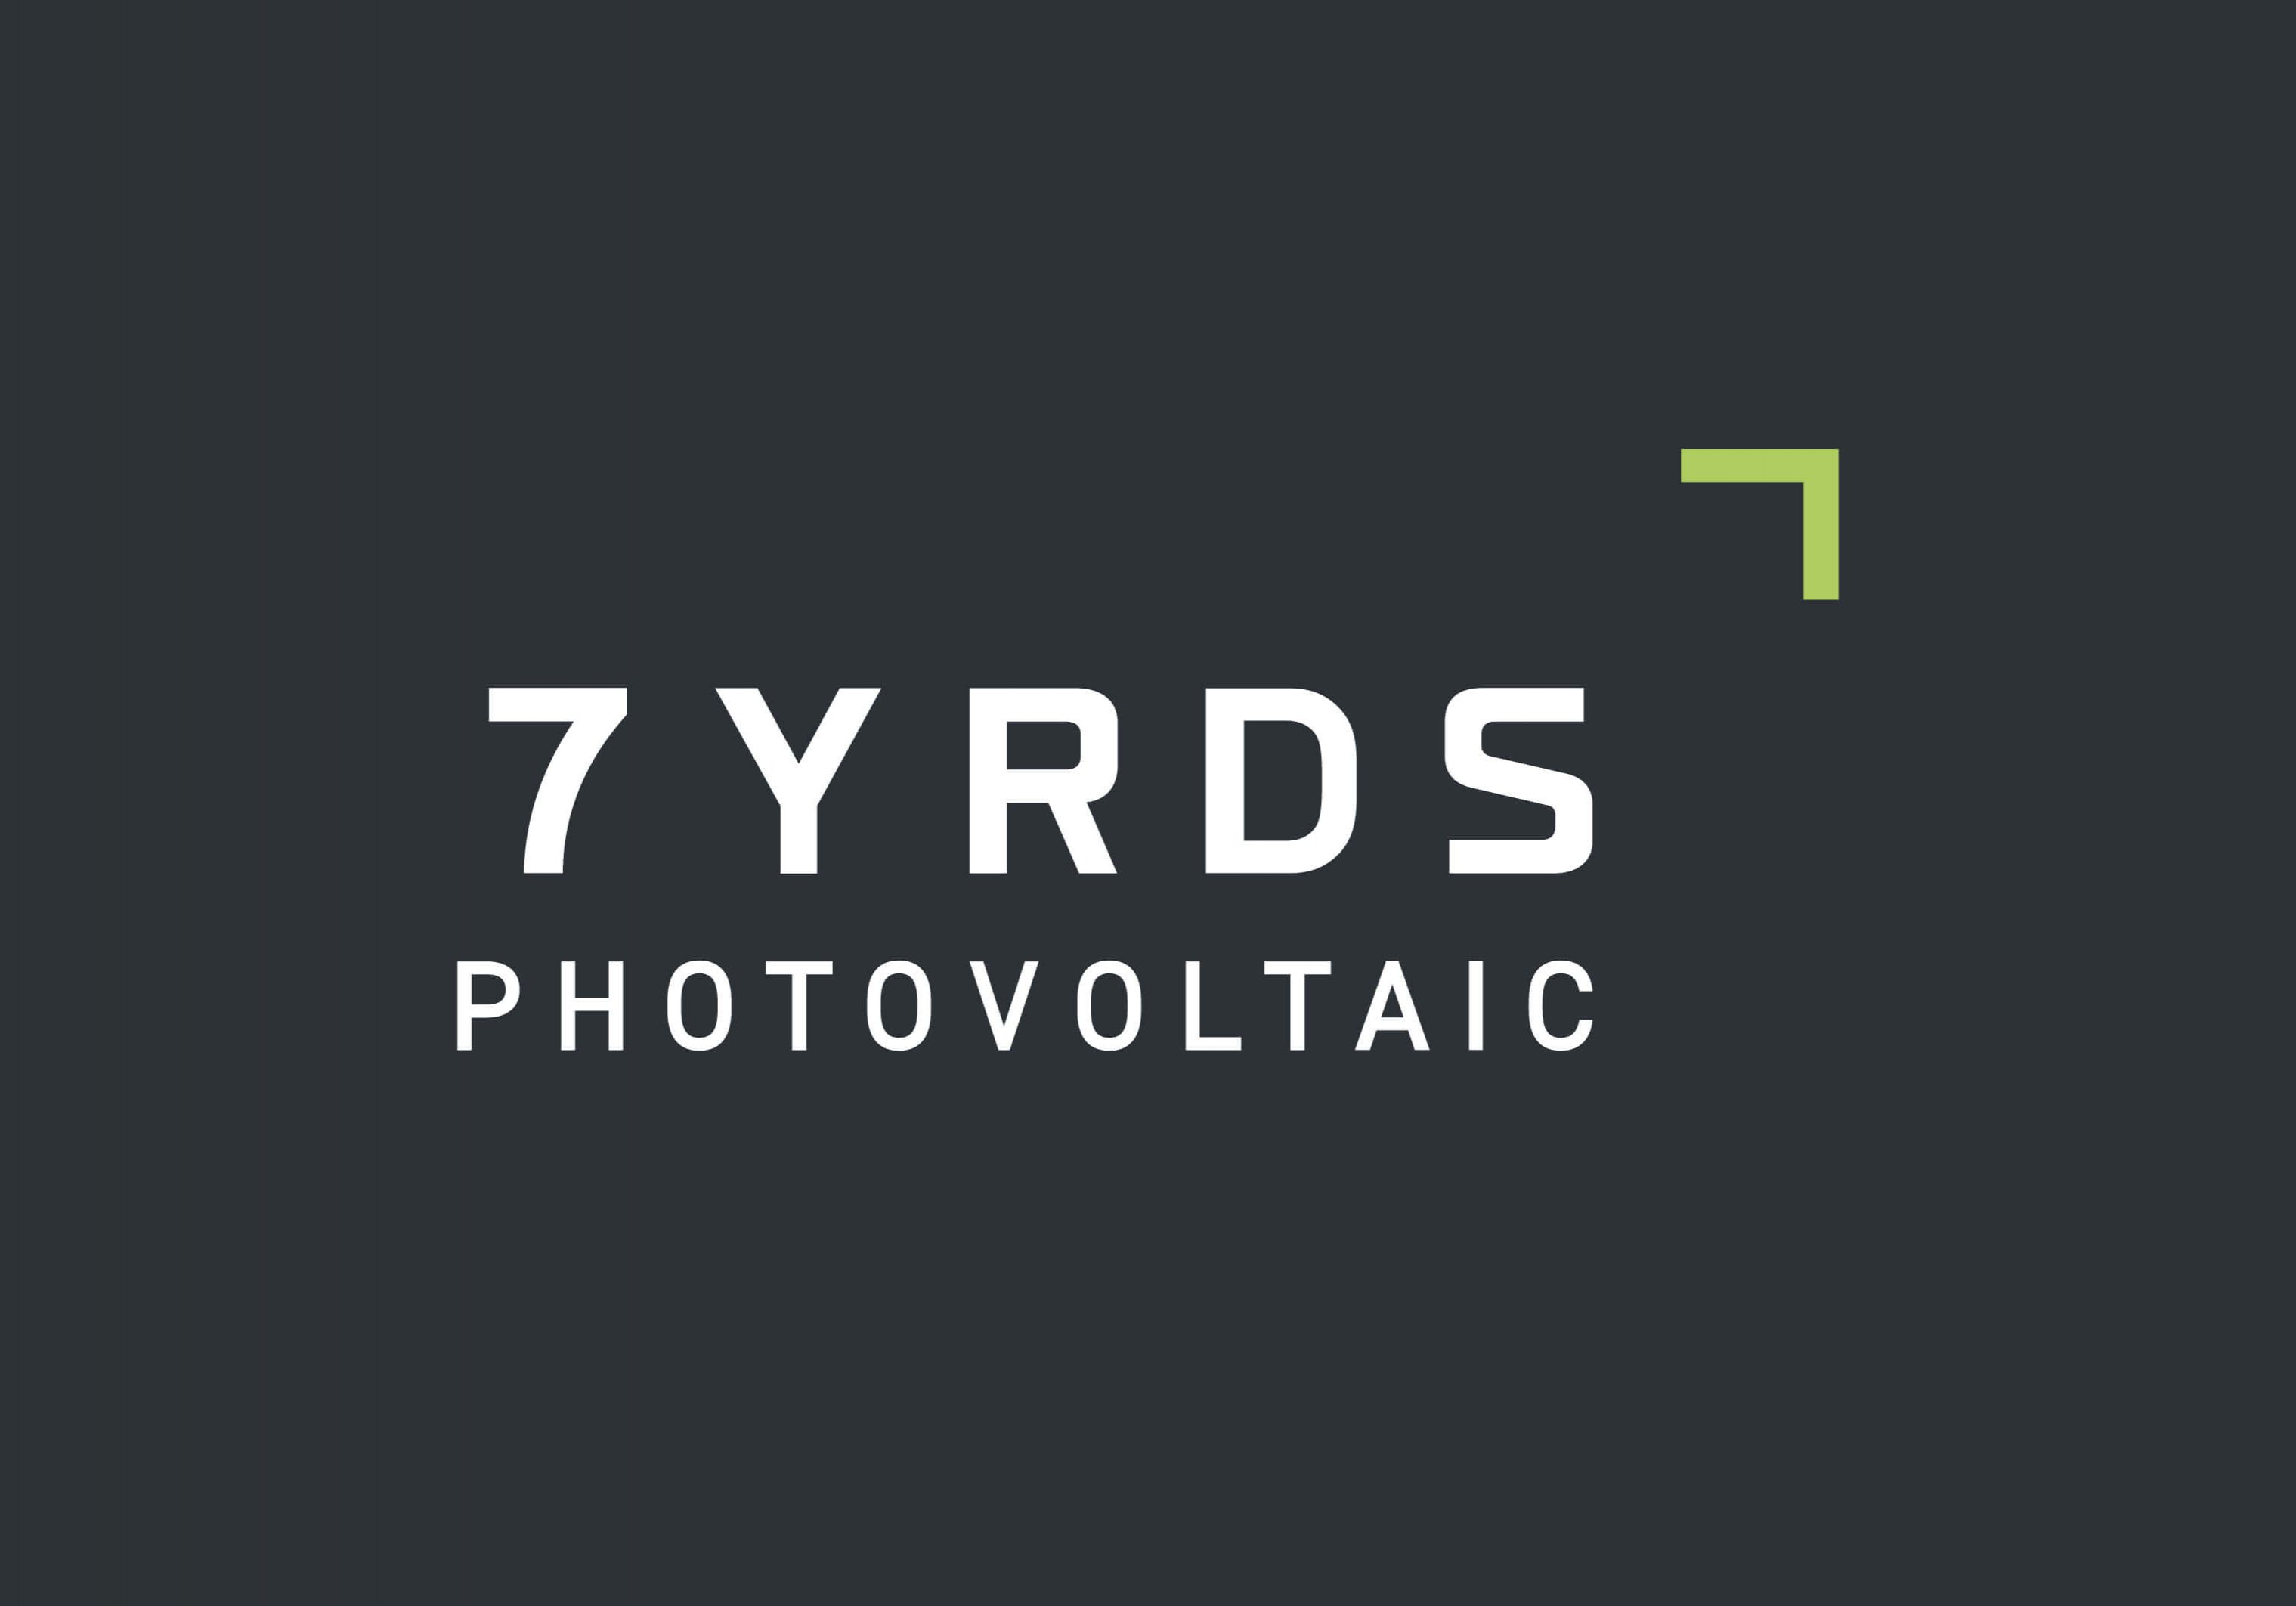 7yrds-photovoltaic-geschaeftsfelder-submarke